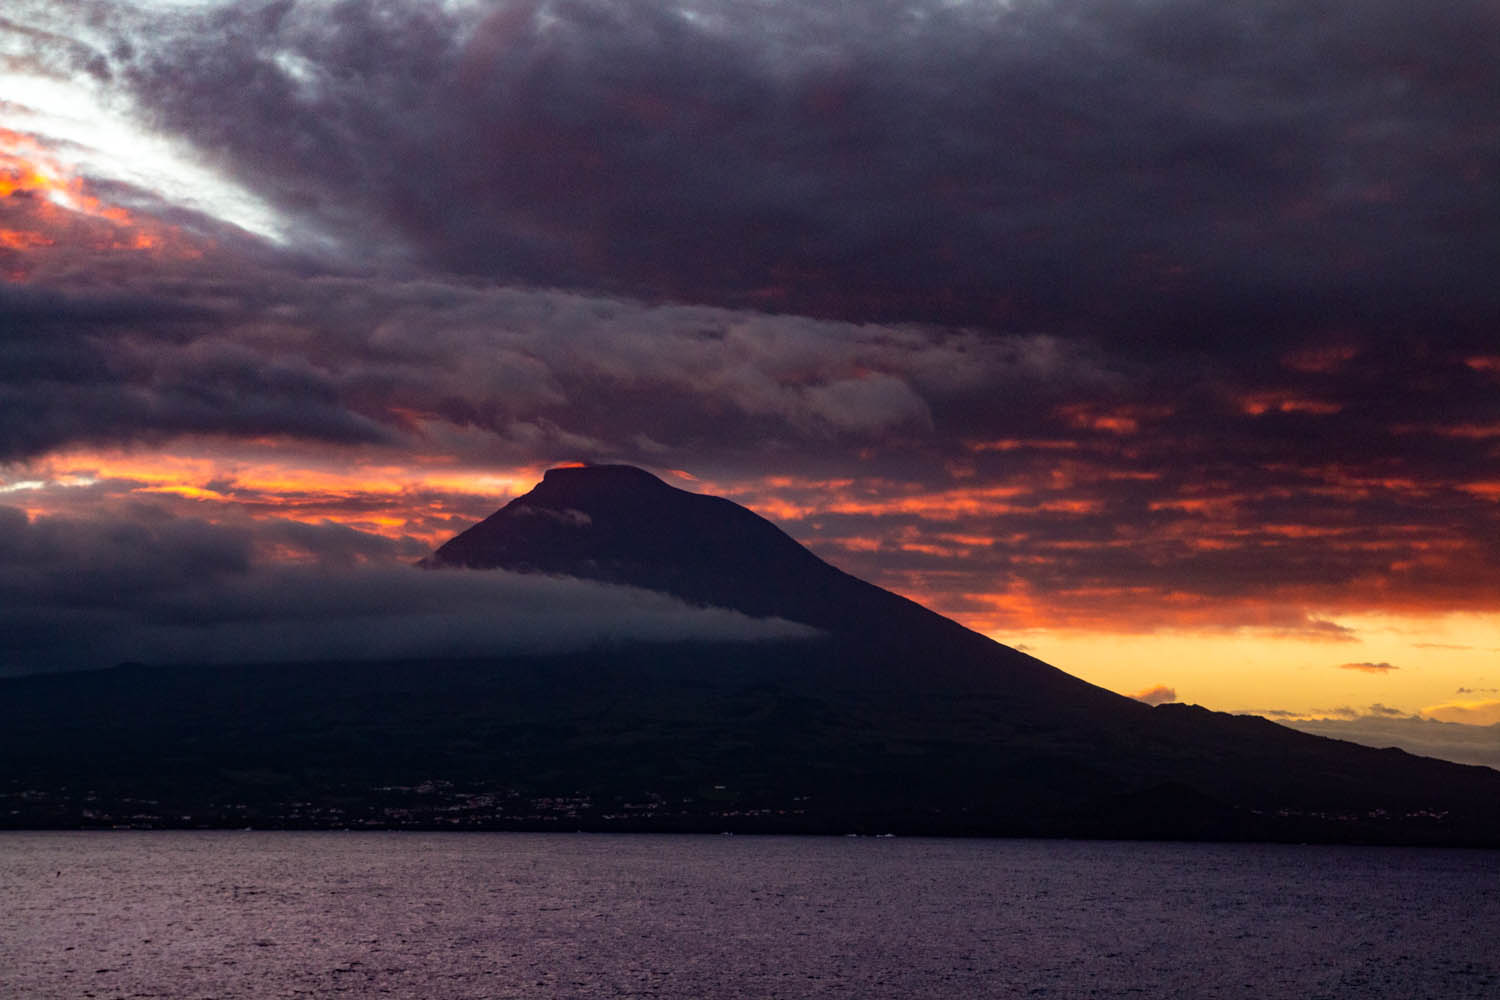 Voyage photo - Le Grand Cachalot des Açores. Paysages de Pico © Stéphanie Vigetta -Wild Seas Explorer